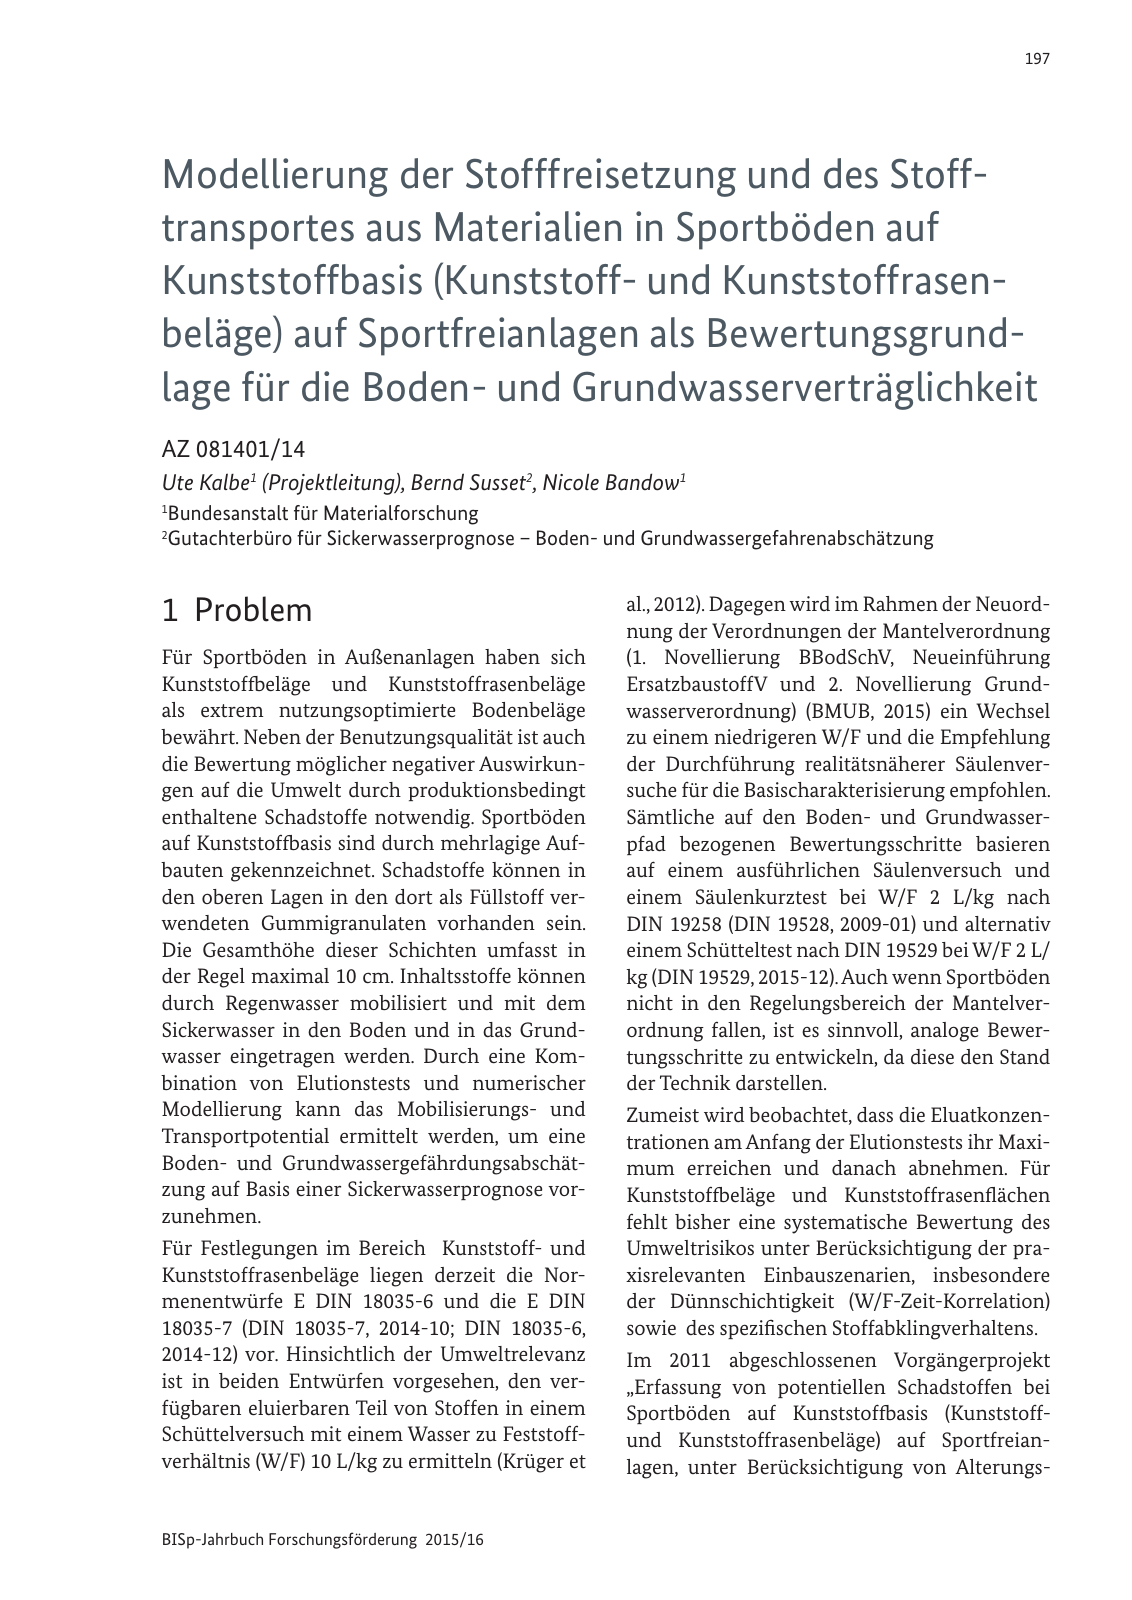 Vorschau BISp-Jahrbuch Forschungsförderung 2015/16 Seite 199